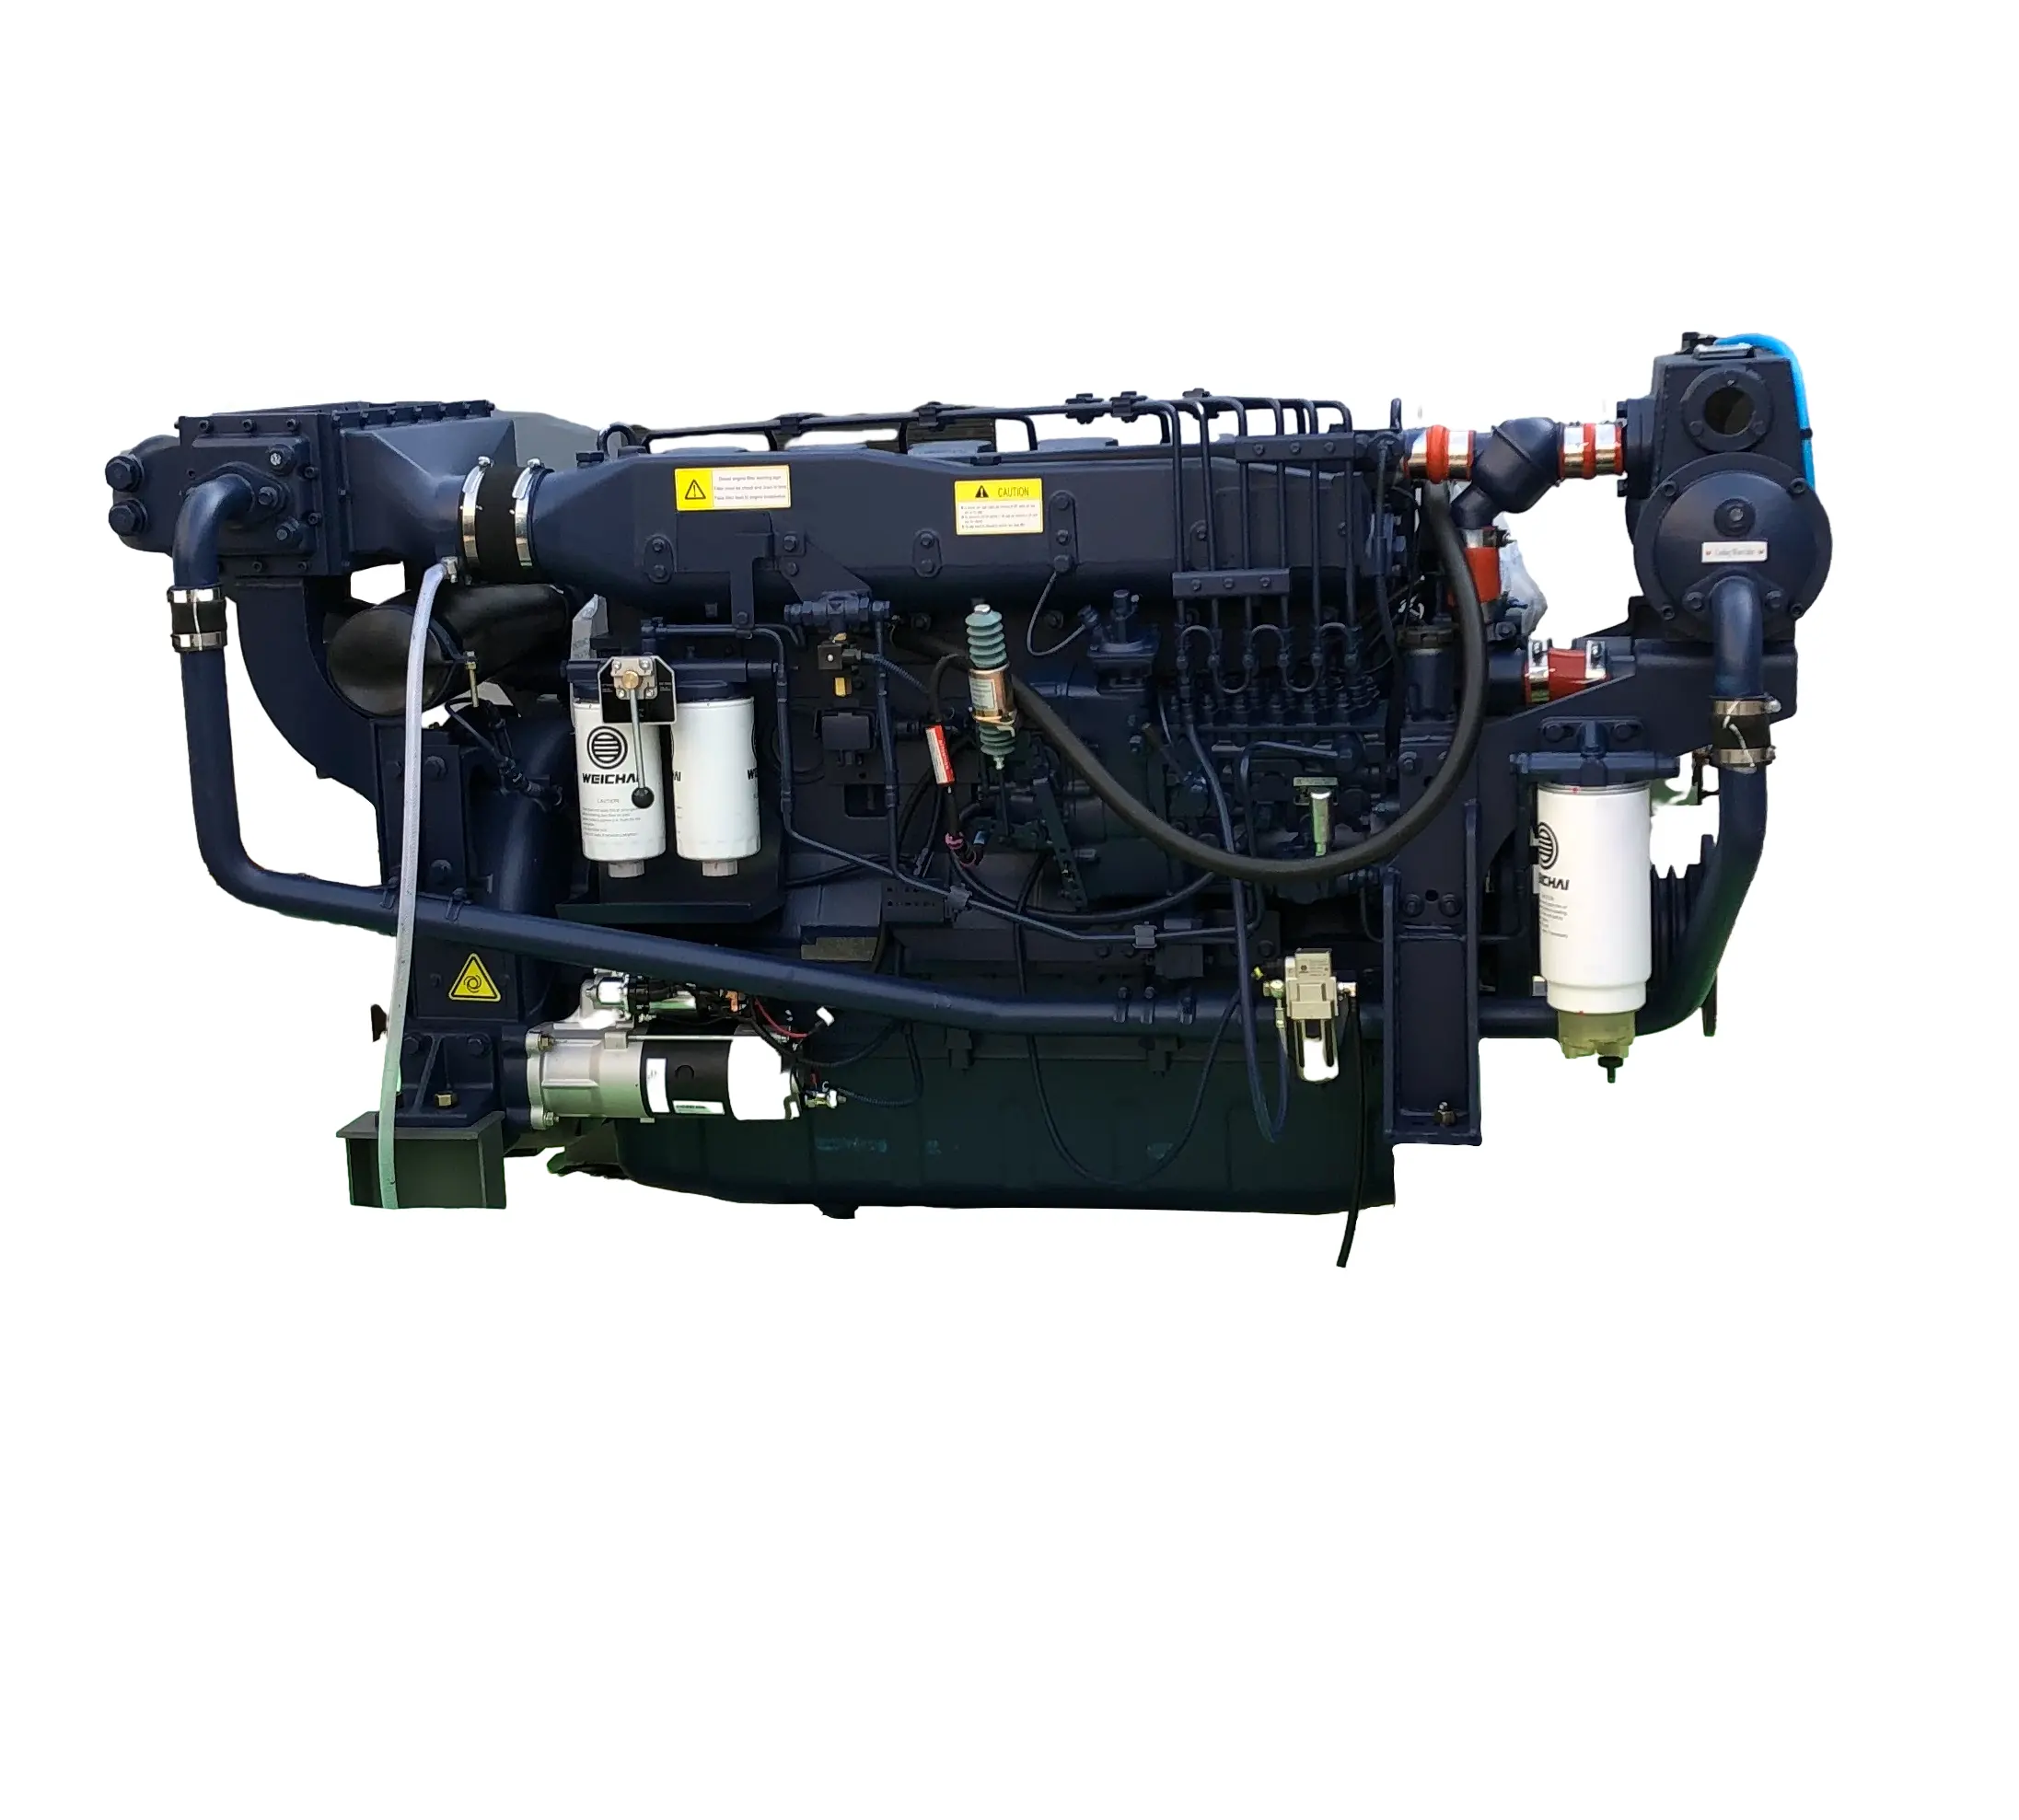 WD10C170-15 морской дизельный двигатель, промежуточный охладитель, встроенный двигатель с водяным охлаждением, 125 кВт/170 л.с./1500 об./мин. Для использования на лодке